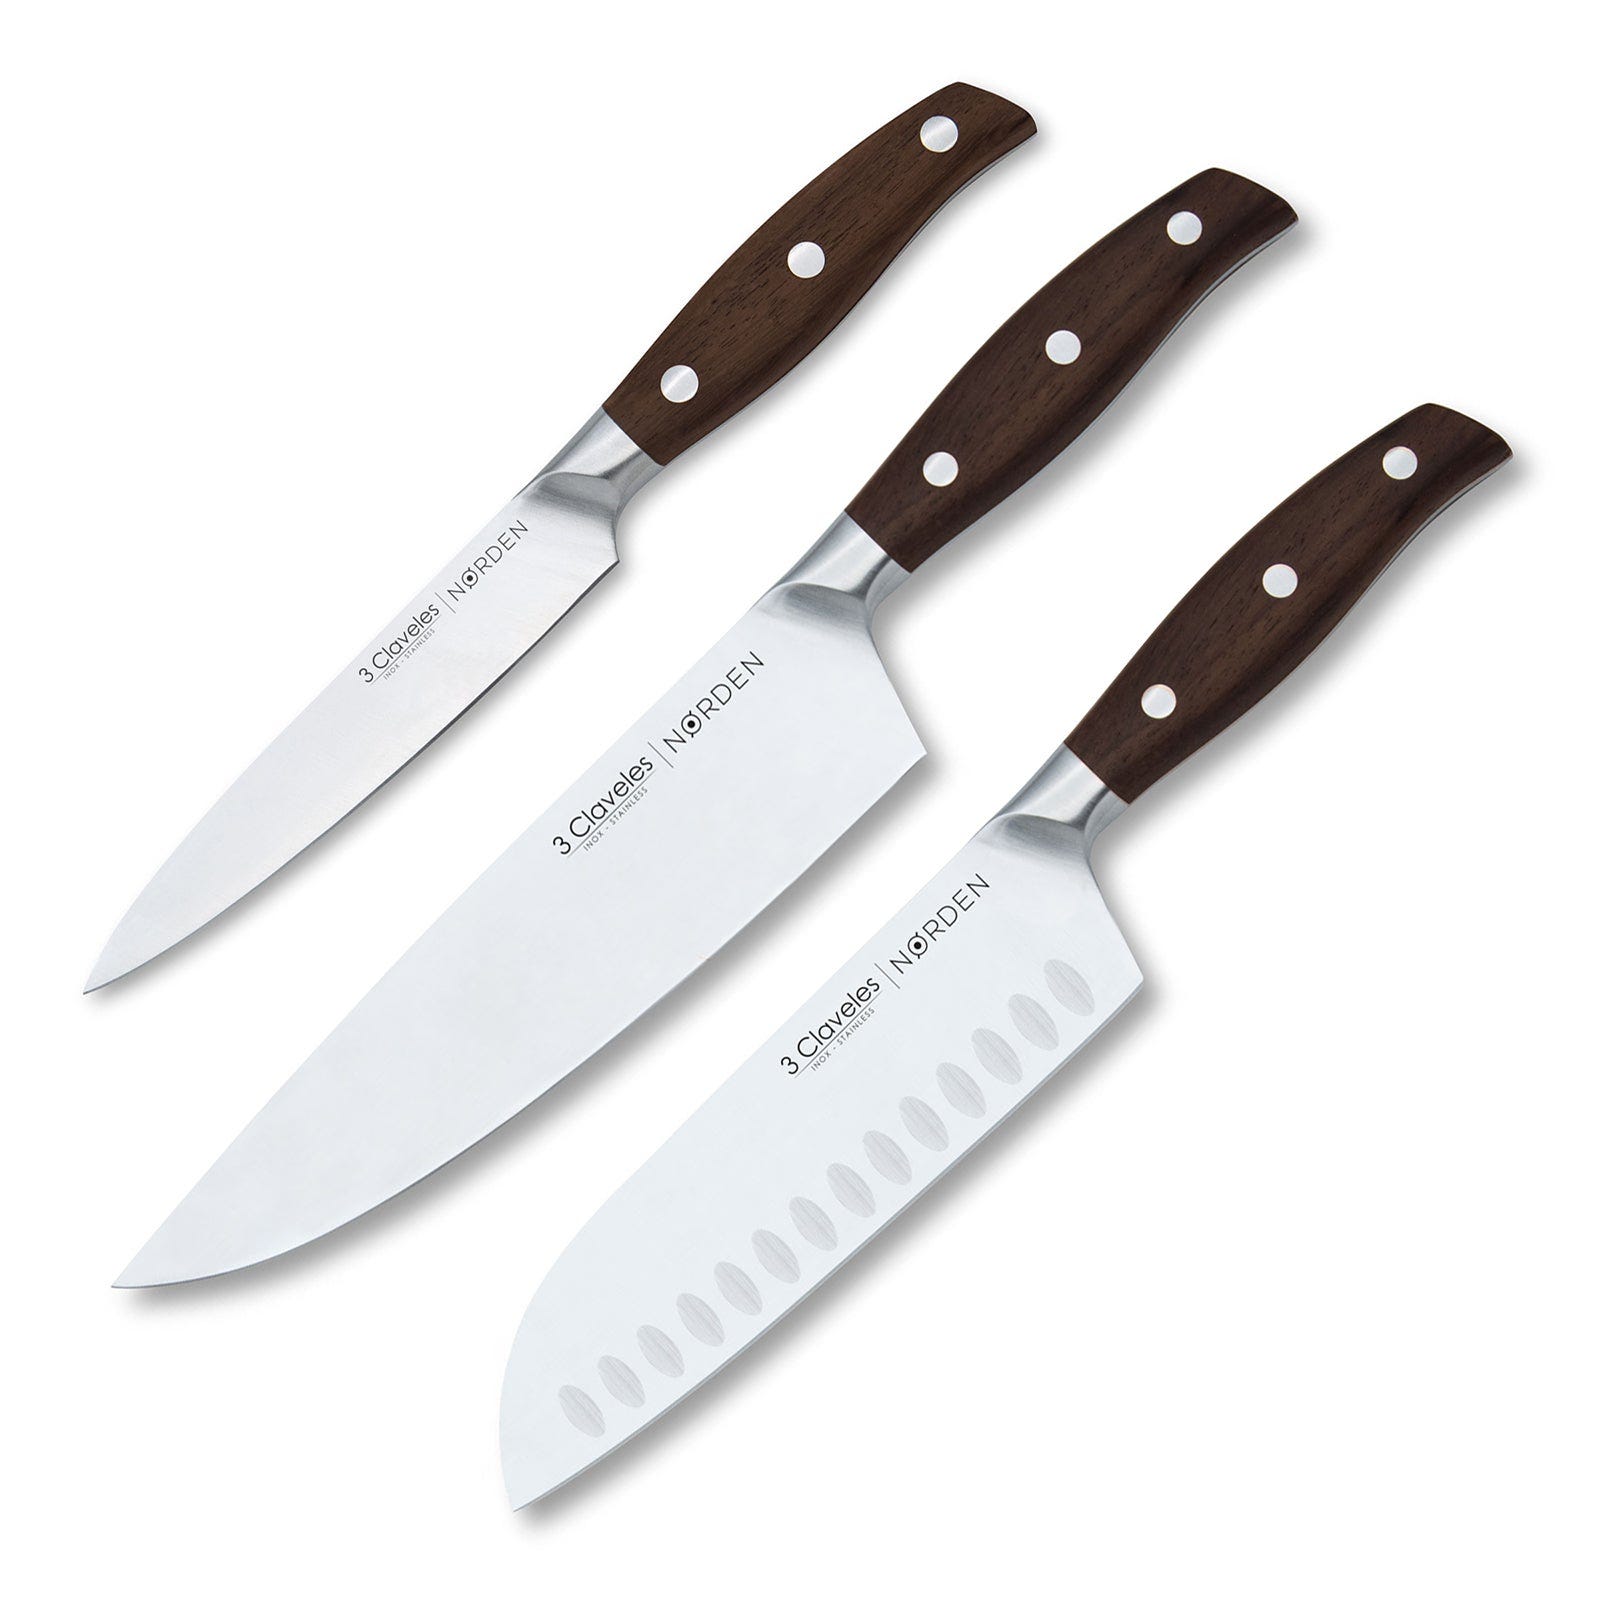 3 Claveles cuchillos de cocina Santoku modelo Norden